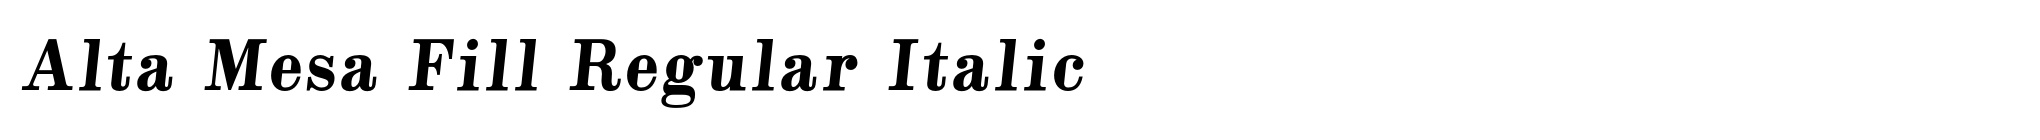 Alta Mesa Fill Regular Italic image